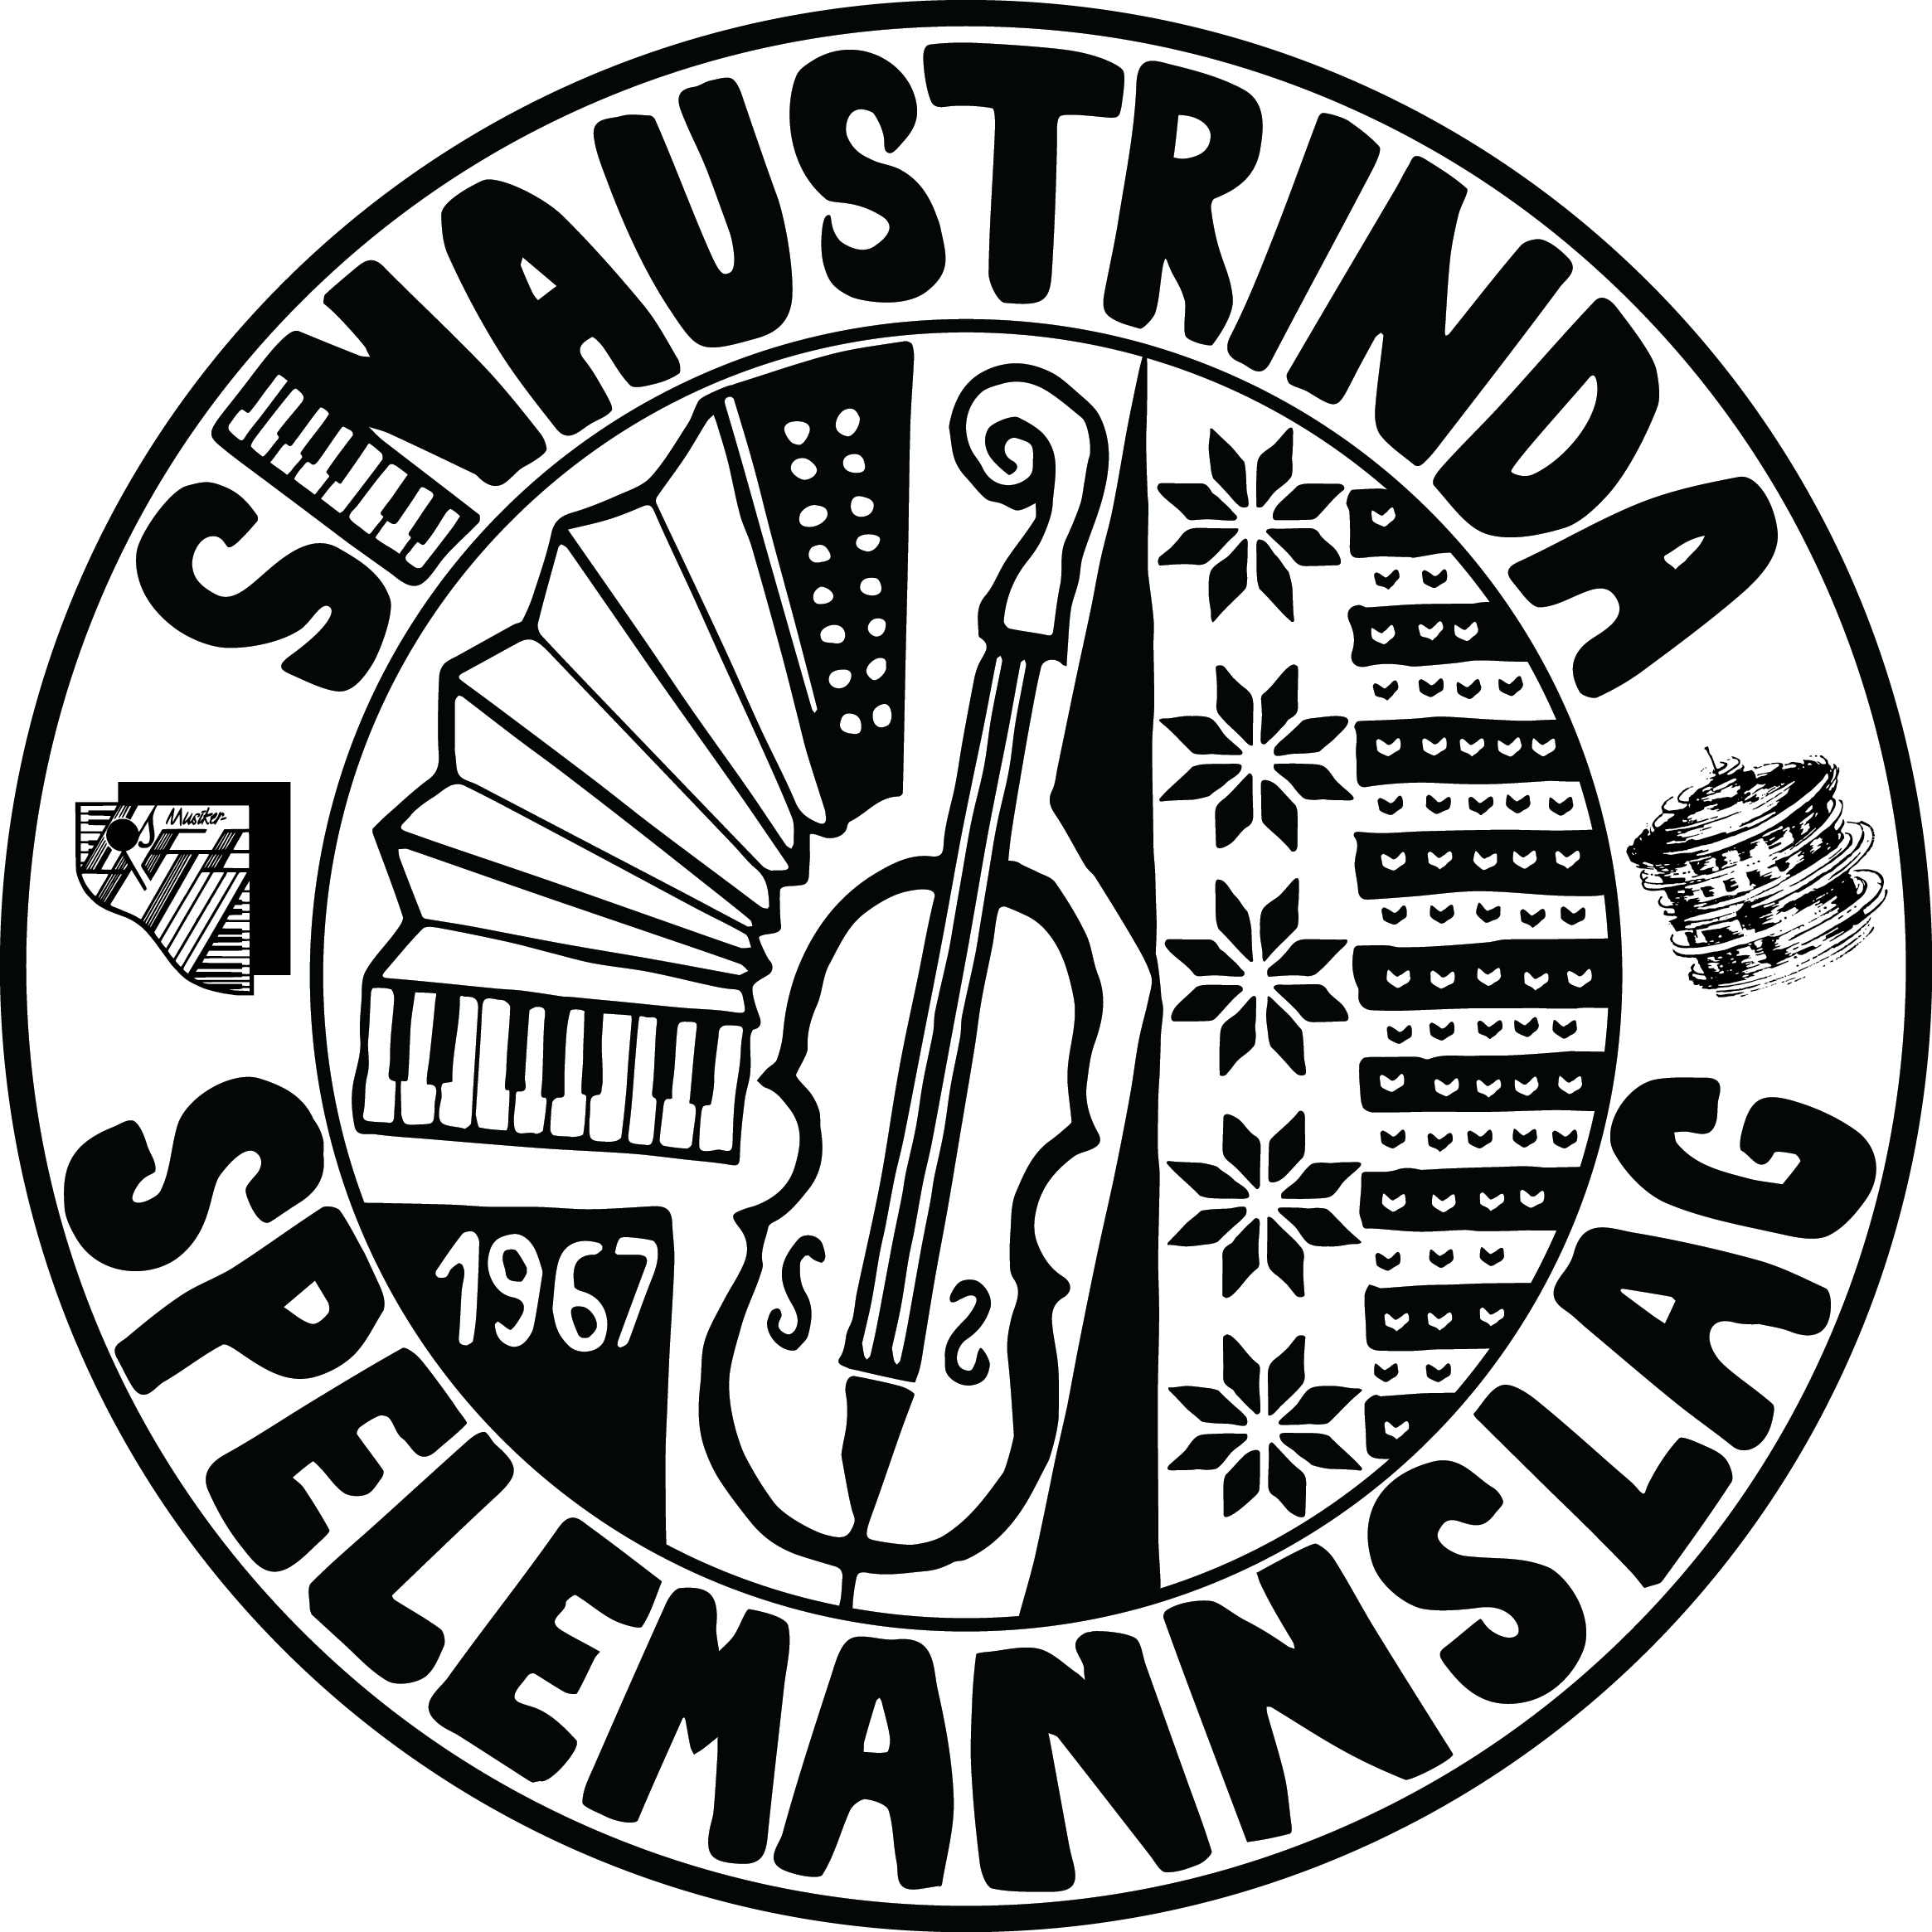 Snaustrindas logo